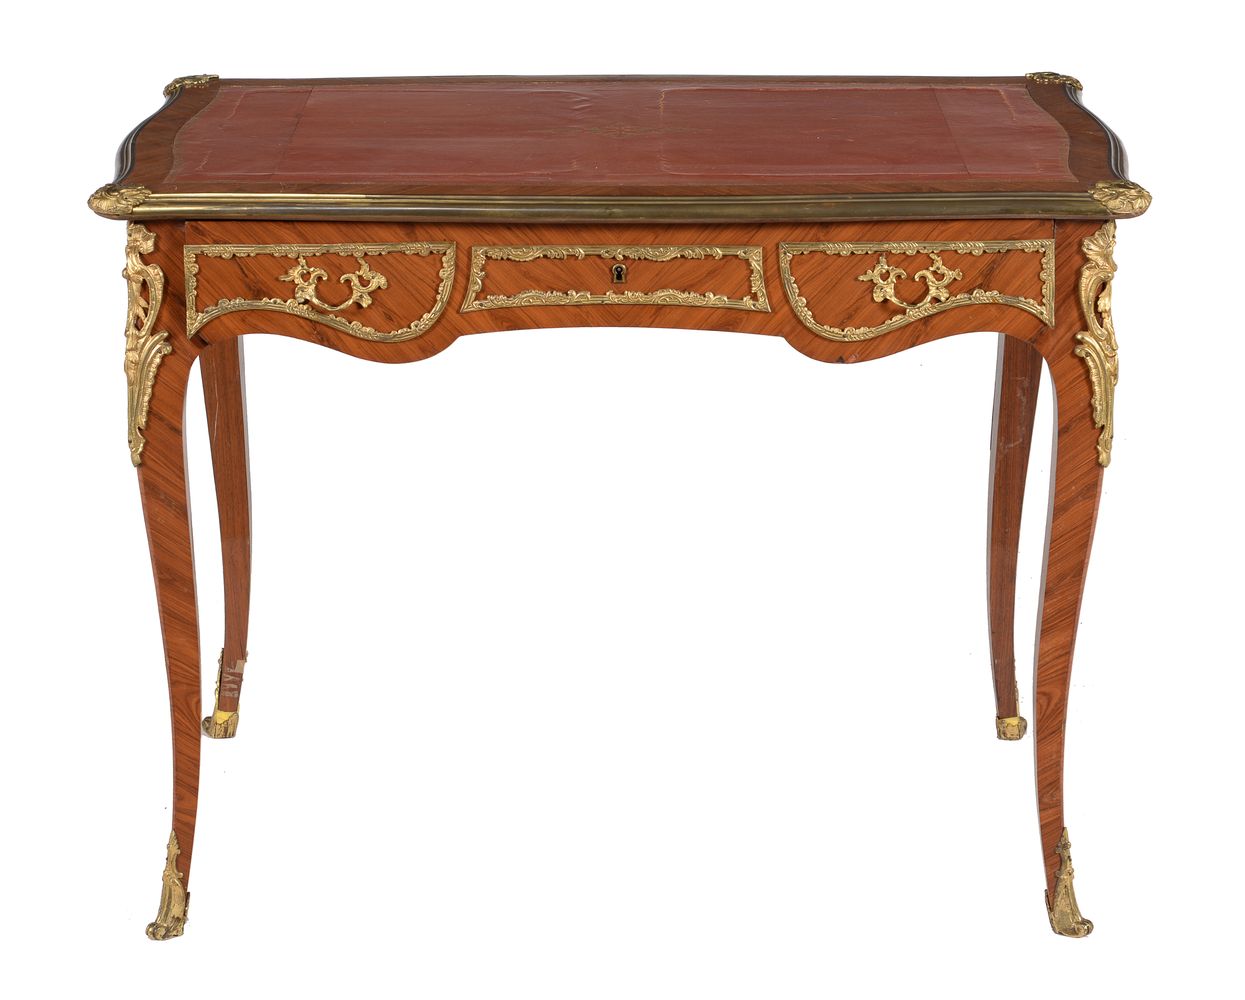 ϒ A tulipwood and gilt metal mounted writing table in Louis XVI style